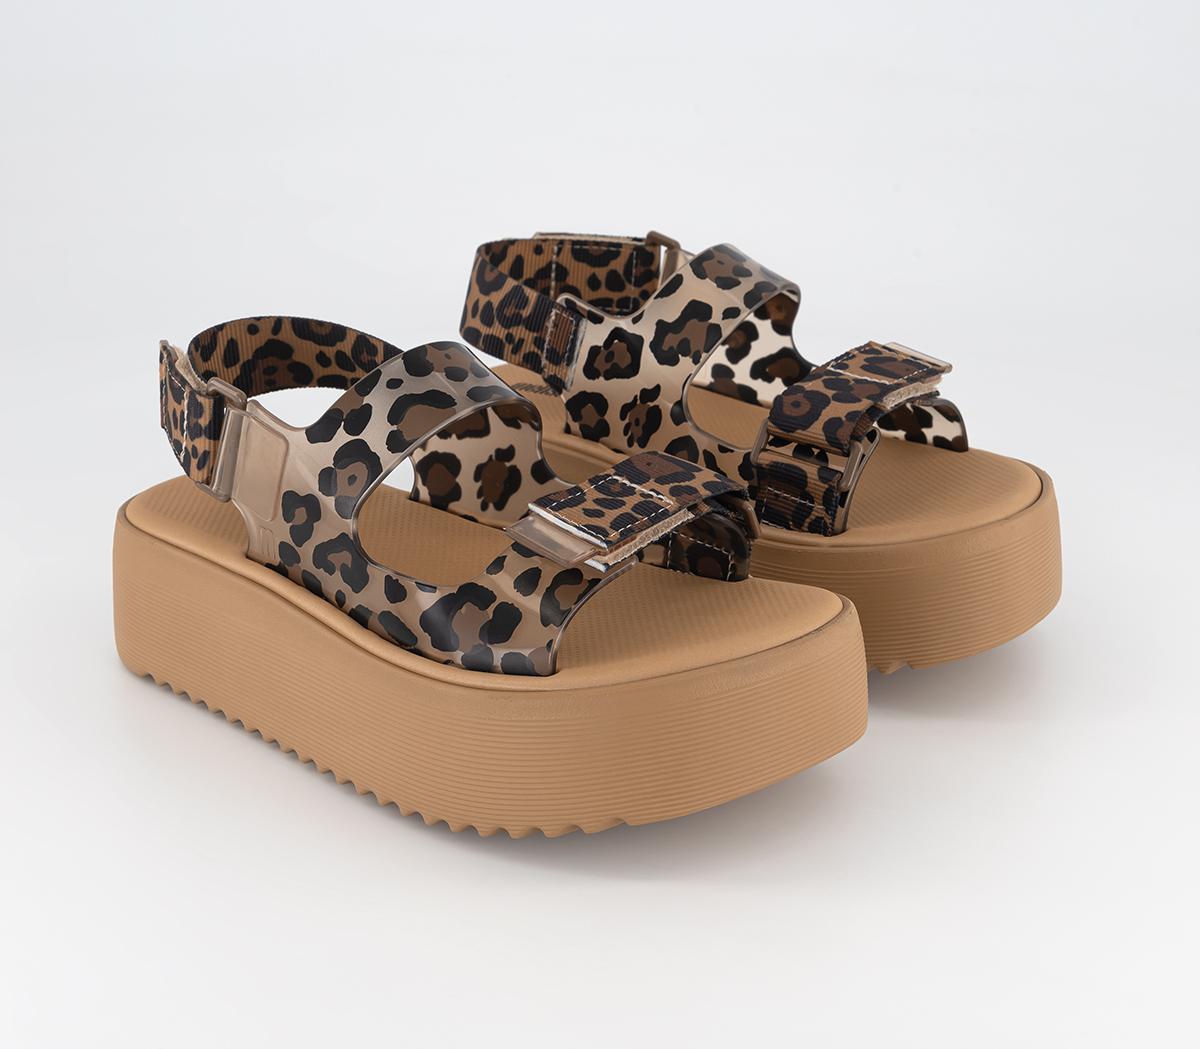 Melissa Womens Brave Papete Platform Sandals Tan Leopard, 3